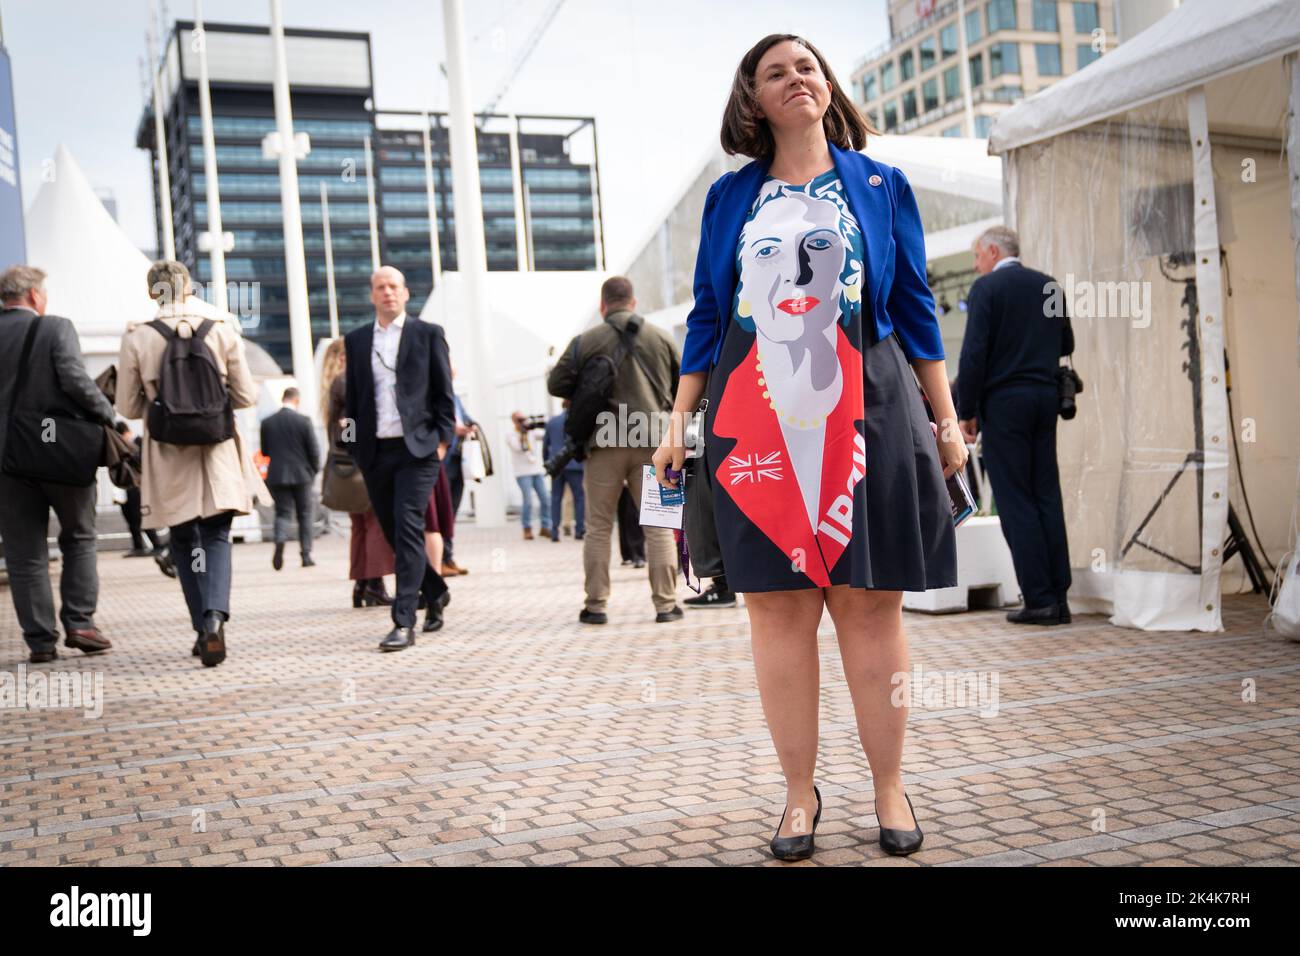 Eine Dame in einem Kleid, in dem die ehemalige Premierministerin Margaret Thatcher abgebildet ist, trifft auf die Jahreskonferenz der Konservativen Partei in Birmingham ein. Bilddatum: Montag, 3. Oktober 2022. Stockfoto